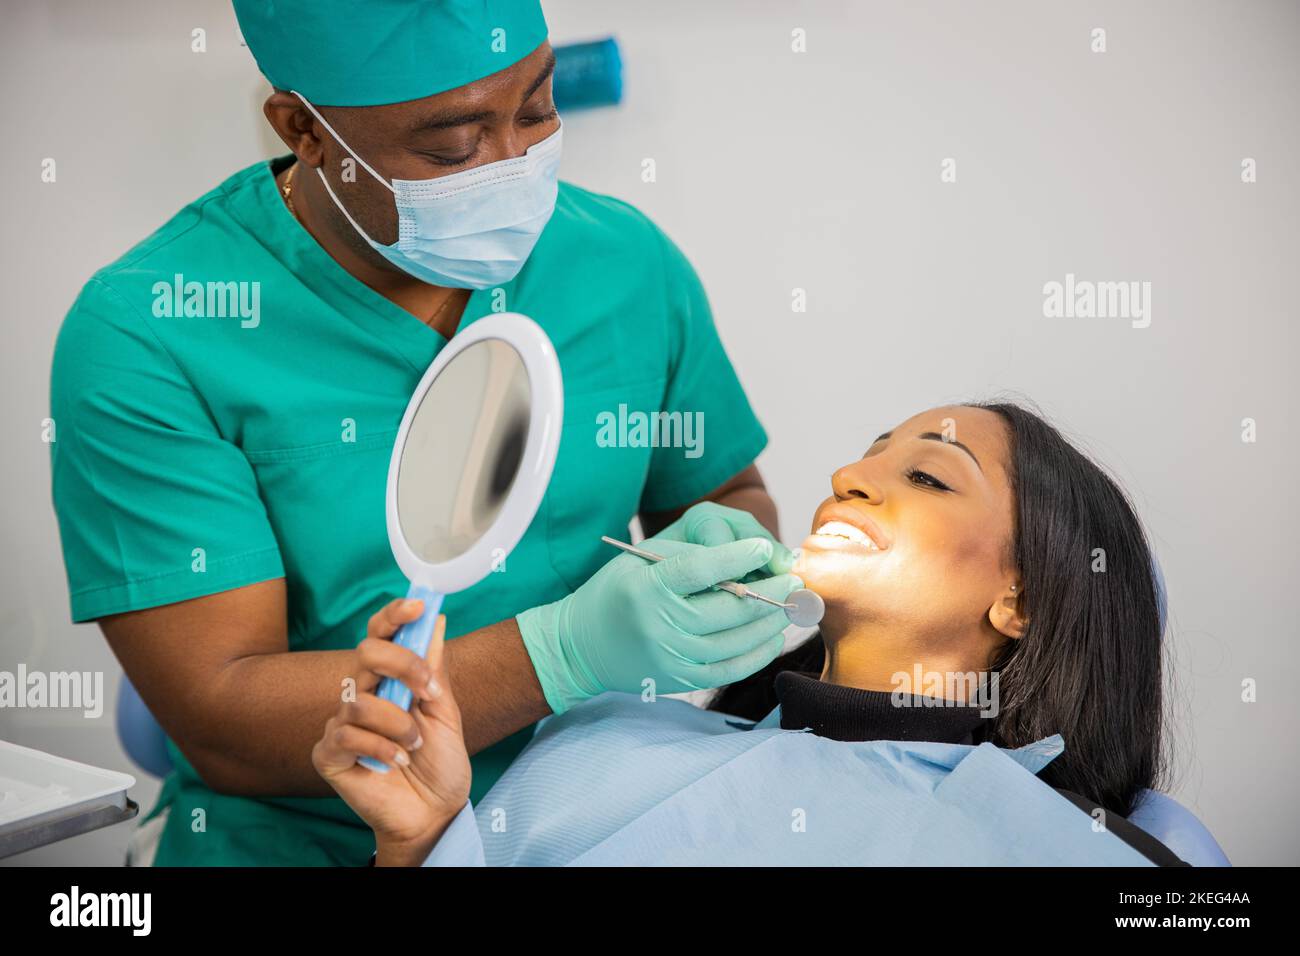 Le patient regarde ses dents avec le miroir pendant une visite dentaire. Banque D'Images